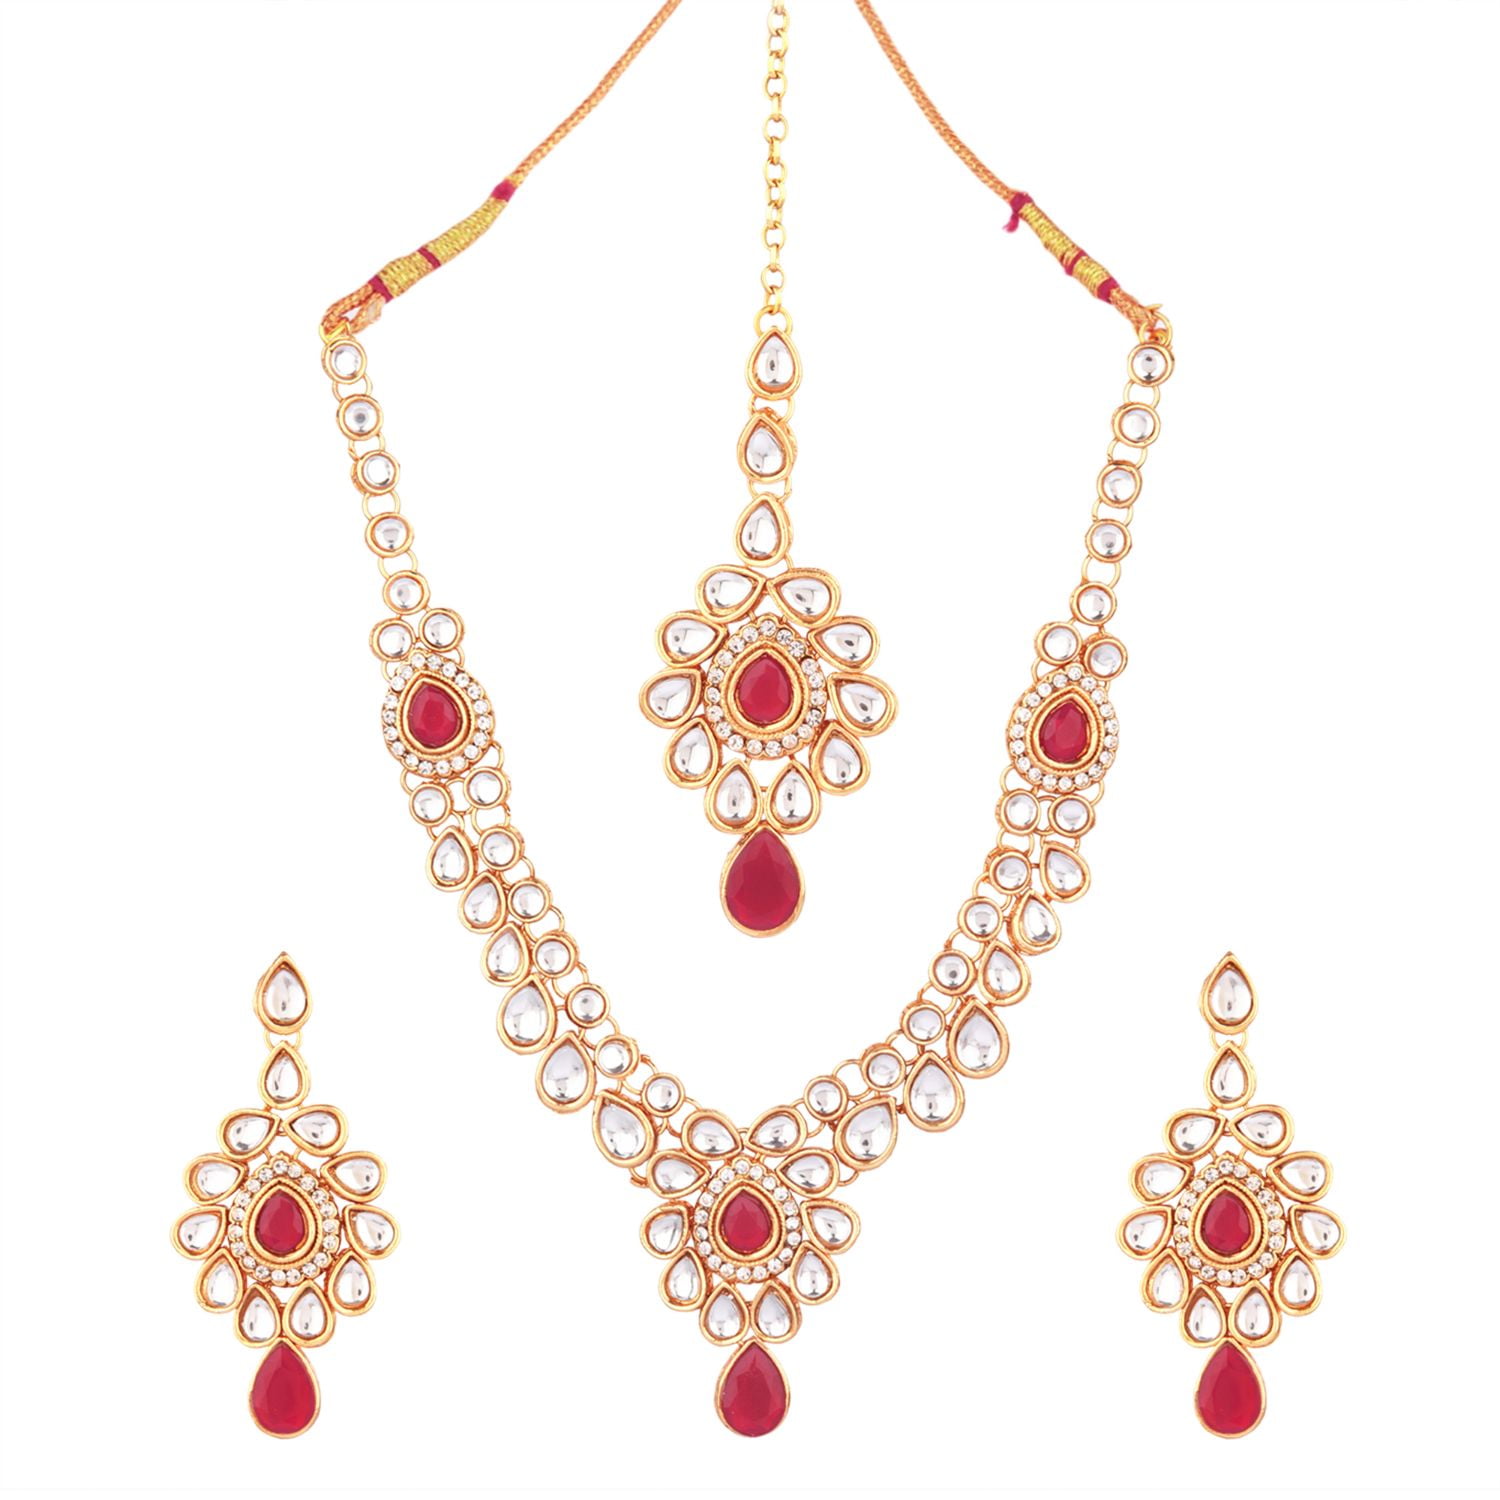 Ethnic Pearl Long Earrings Set For Women Girls Party Wear Indian Traditional  | eBay